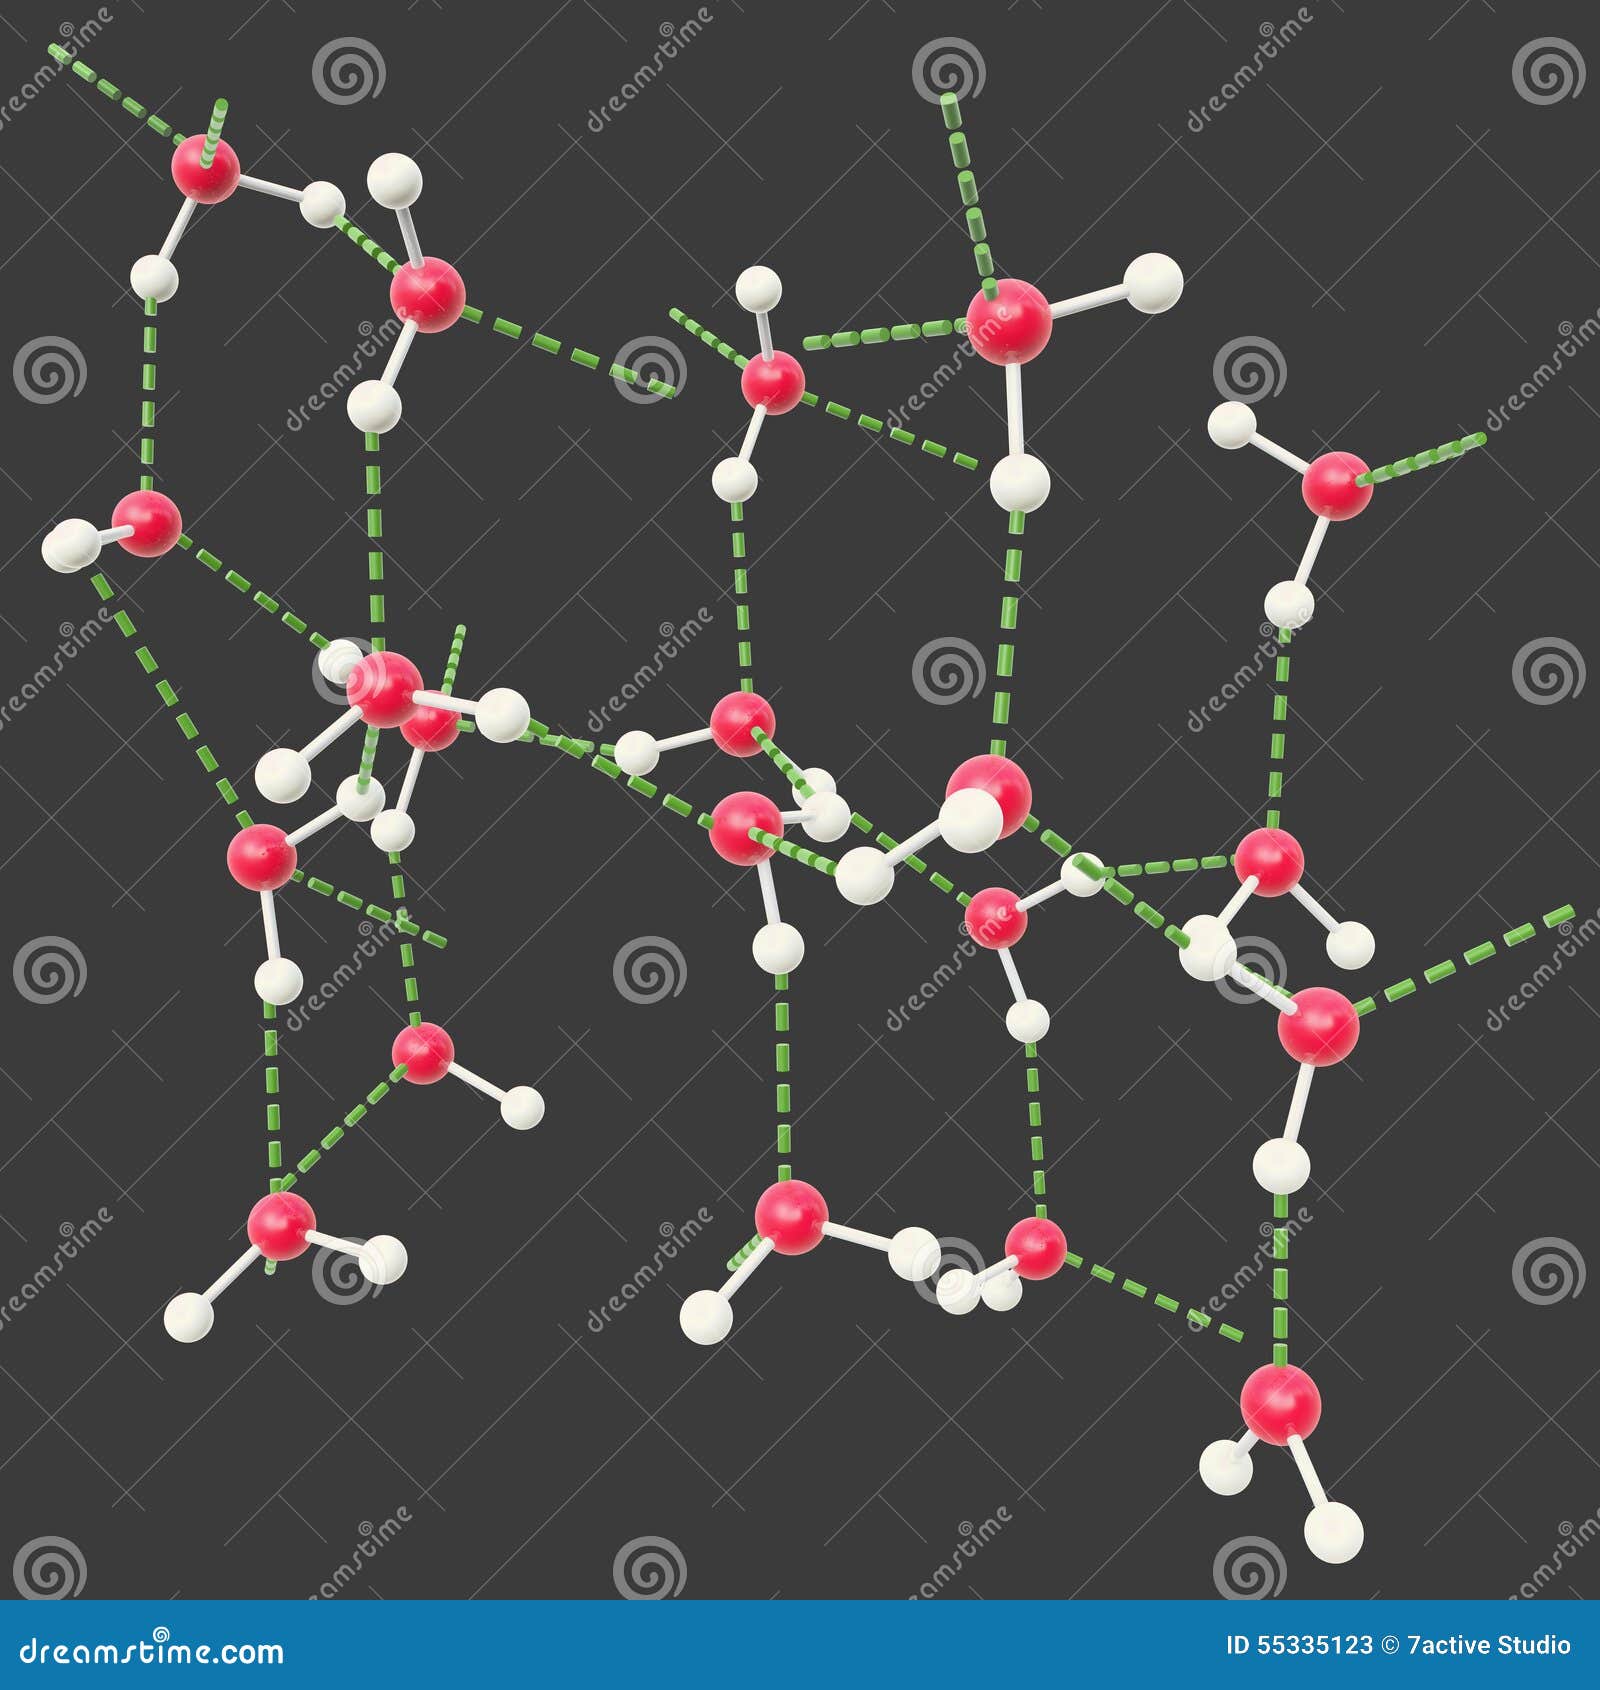 hydrogen bond water molecules